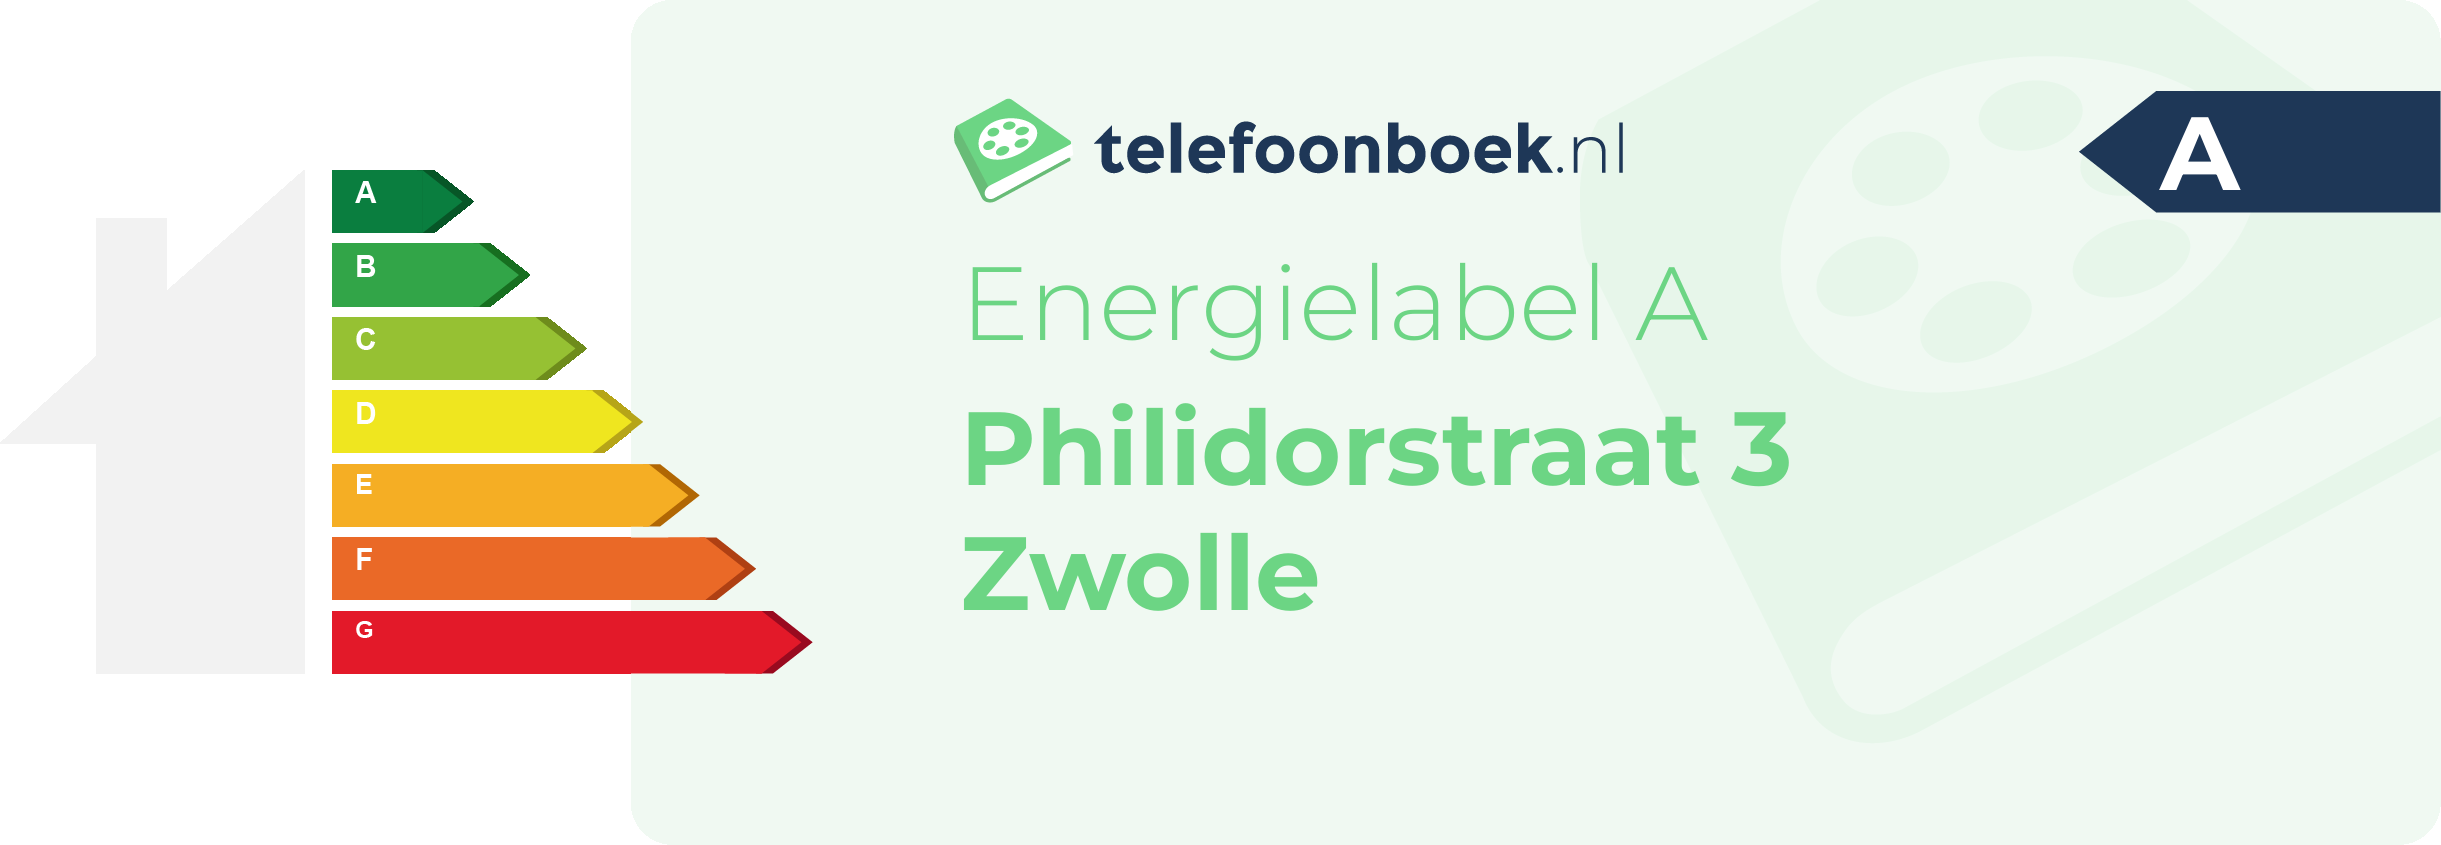 Energielabel Philidorstraat 3 Zwolle